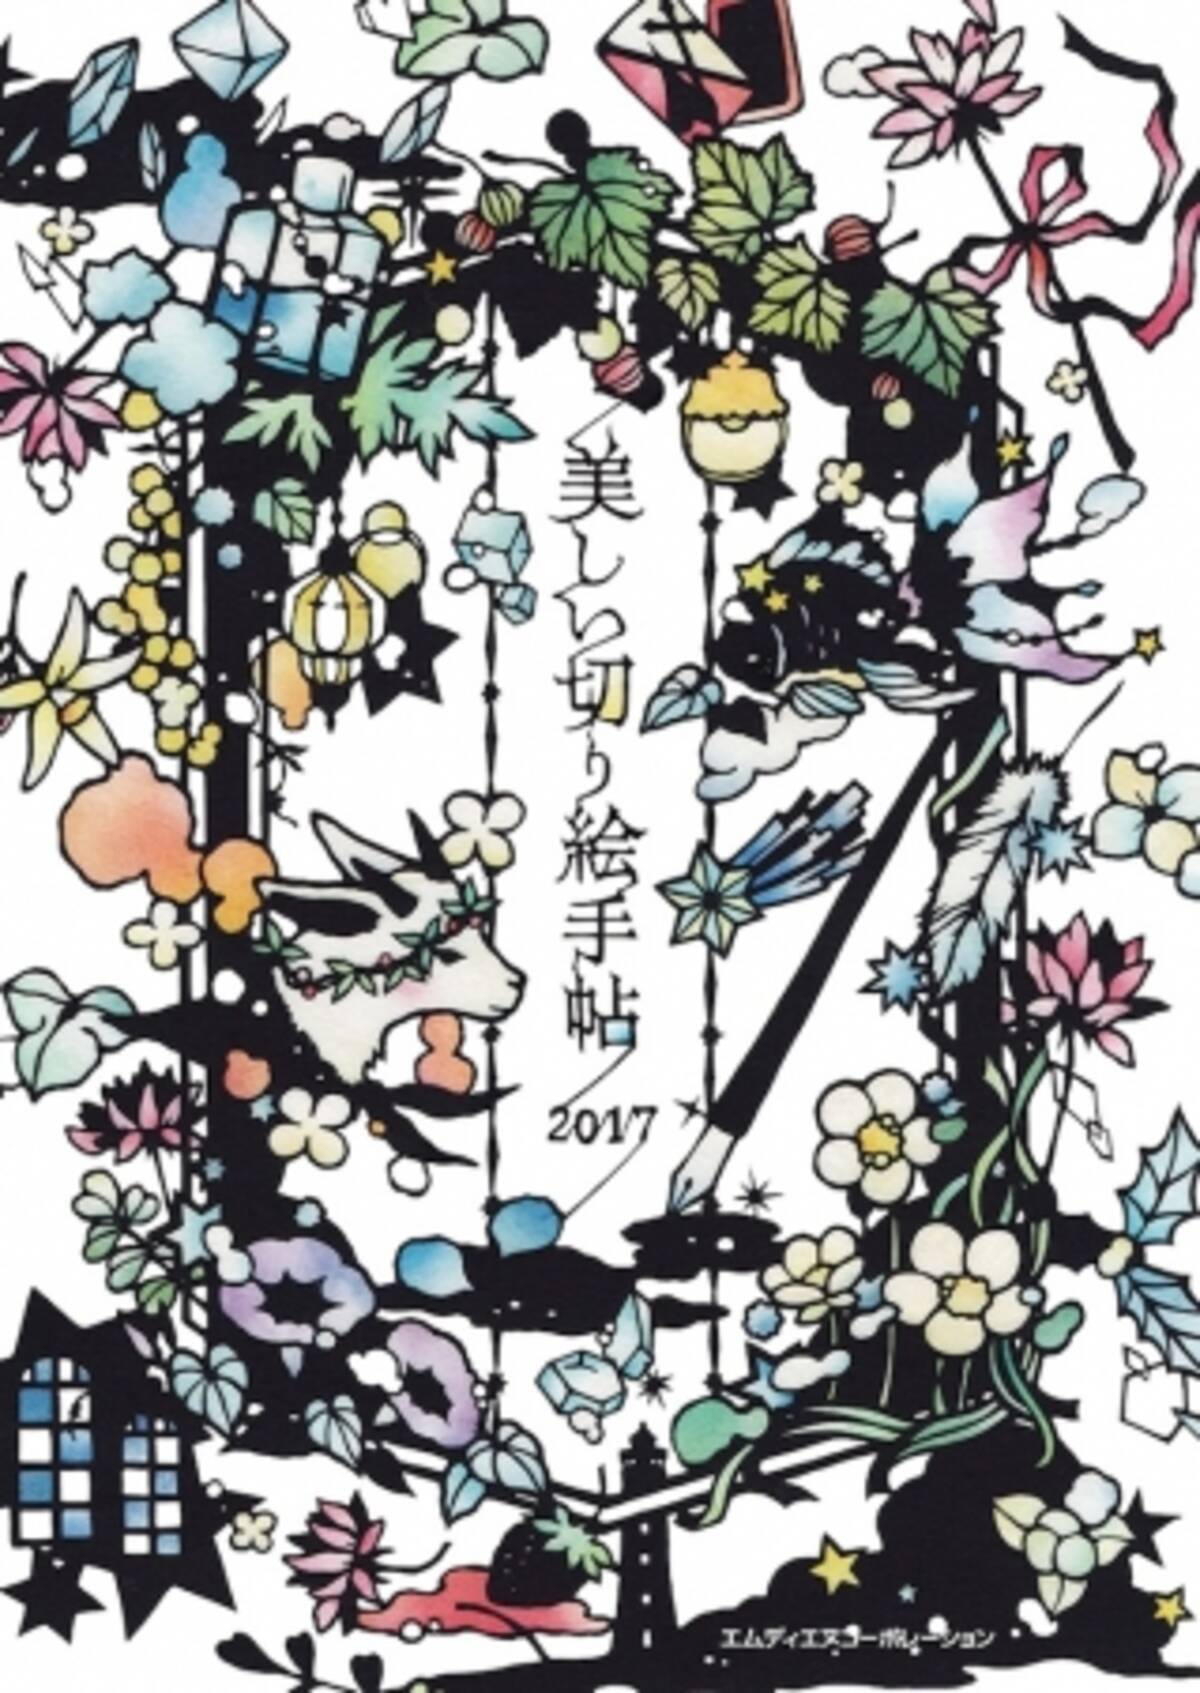 人気切り絵作家 大橋忍さんの美しい切り絵が手帳になりました 美しい切り絵手帖 2017 10月18日発売 2016年10月4日 エキサイトニュース 2 3